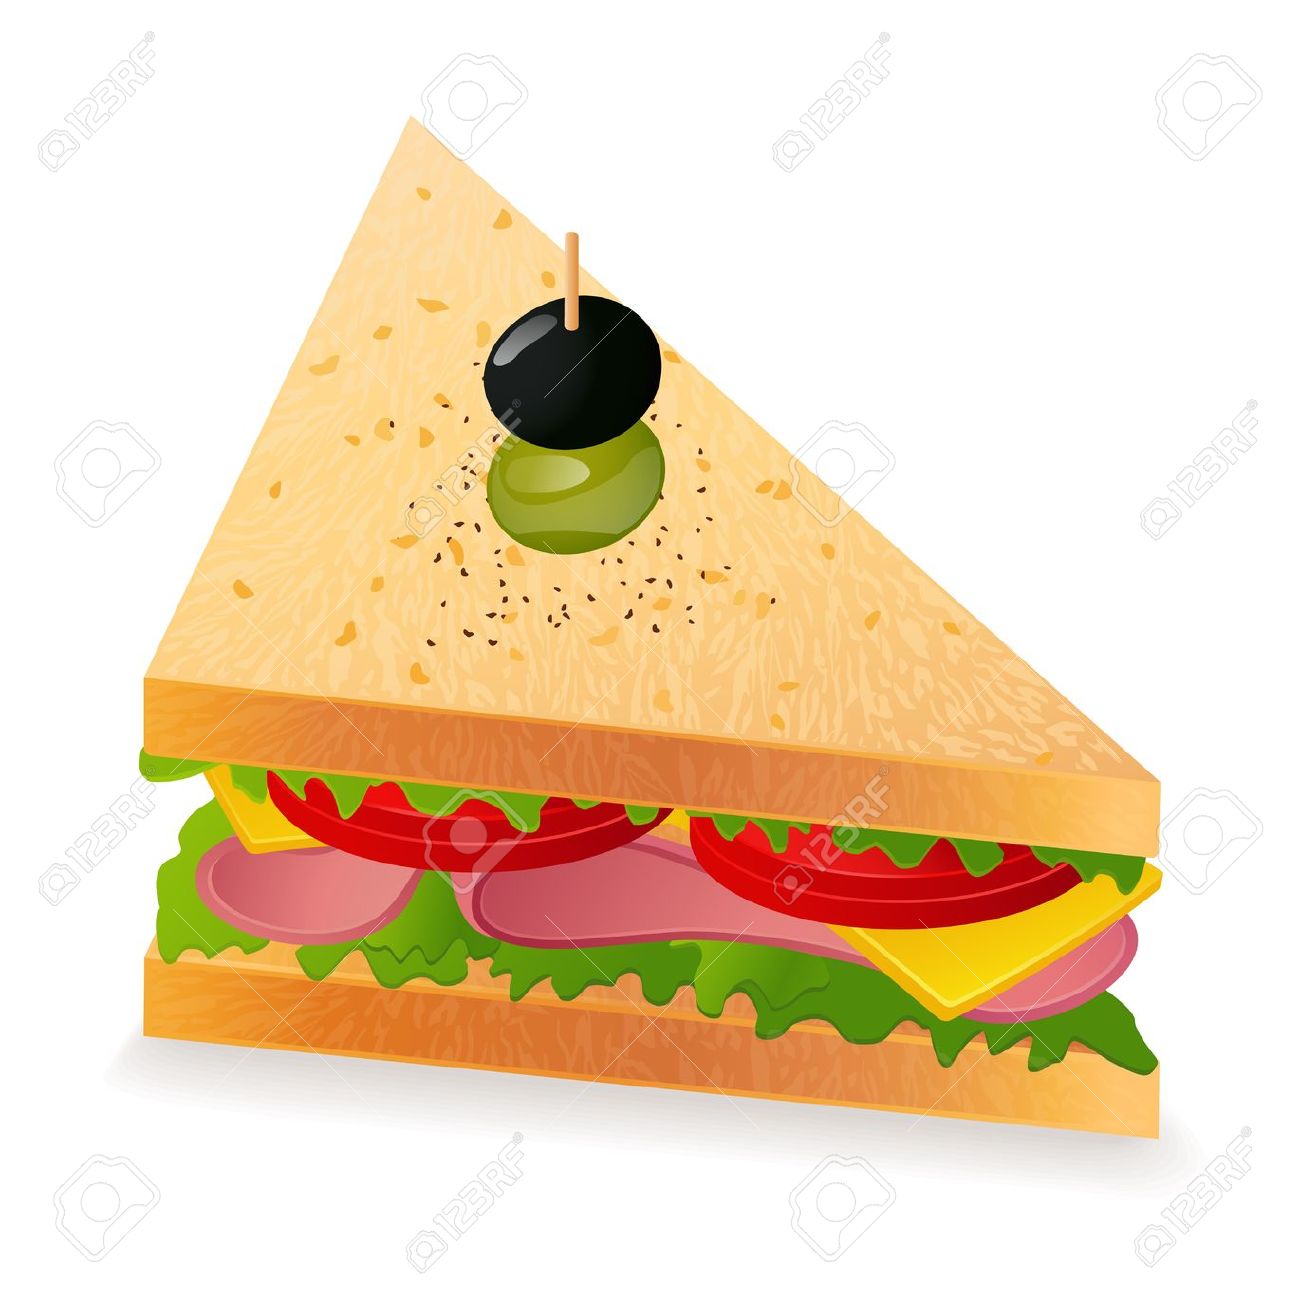 Triangle sandwich clipart.